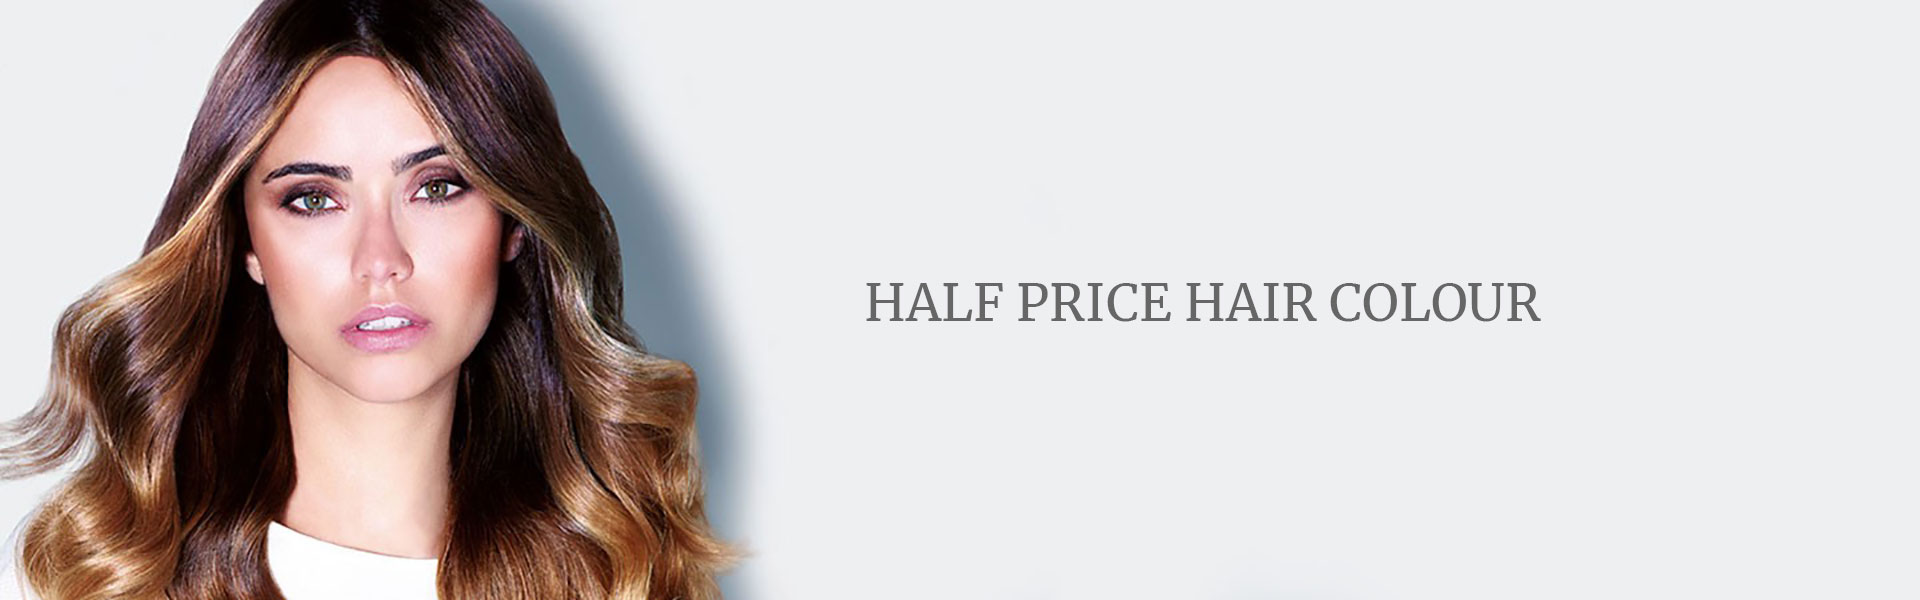 Half Price Hair Colour at Shape Hair Design Salon Teddington